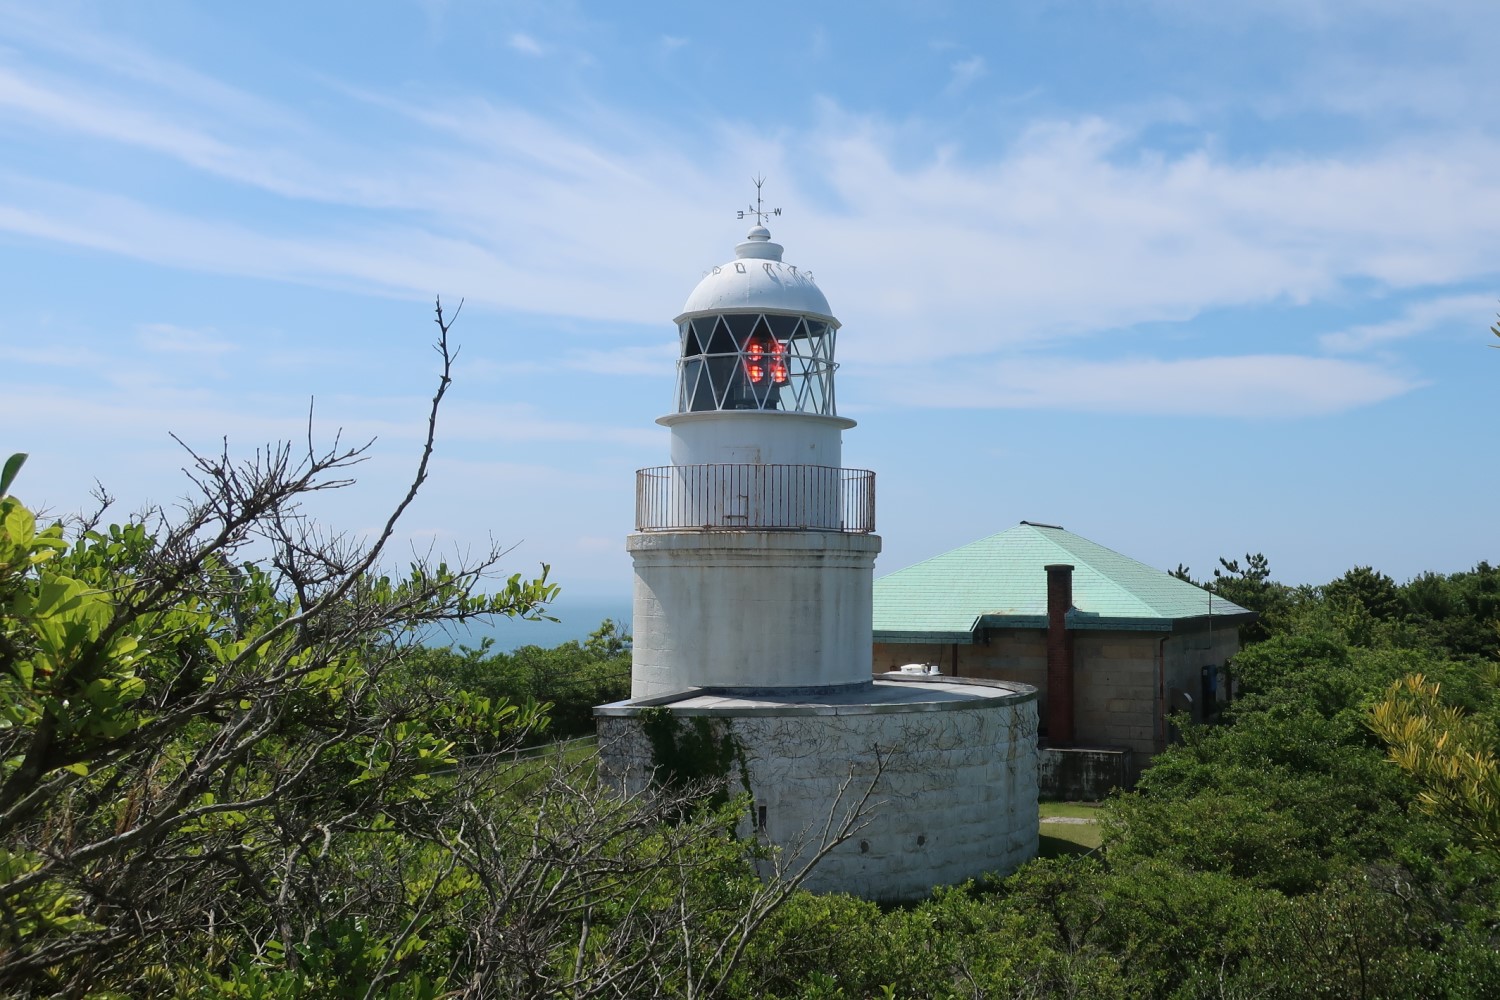 歴史ある友ヶ島灯台、写真映えする砲台跡観光で島はにぎわう